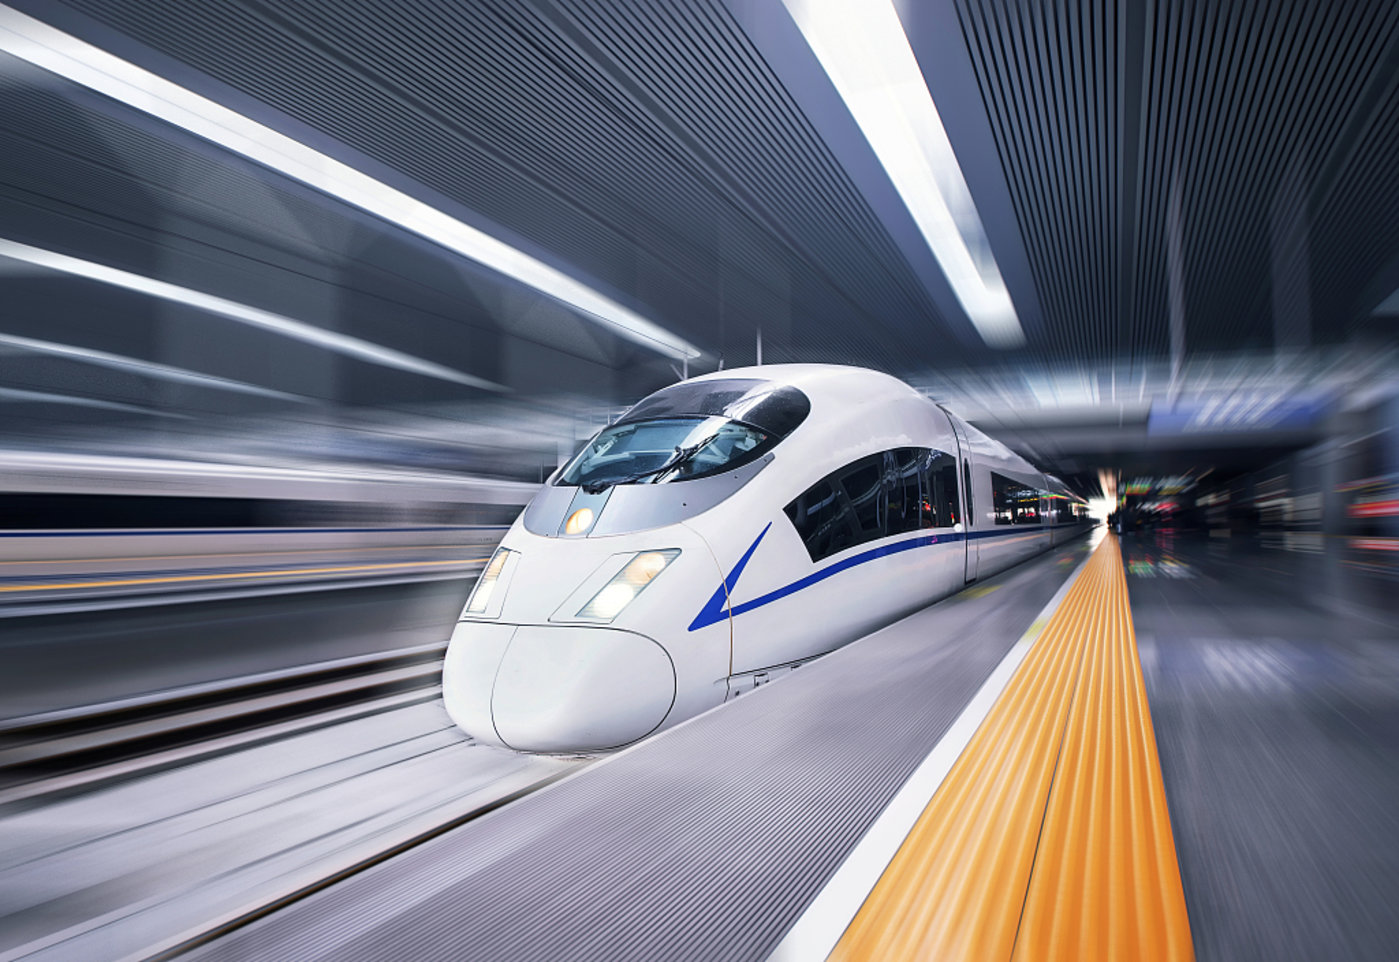 国内首次！首列WIFI全覆盖高铁动车组已正式上线--快科技--科技改变未来